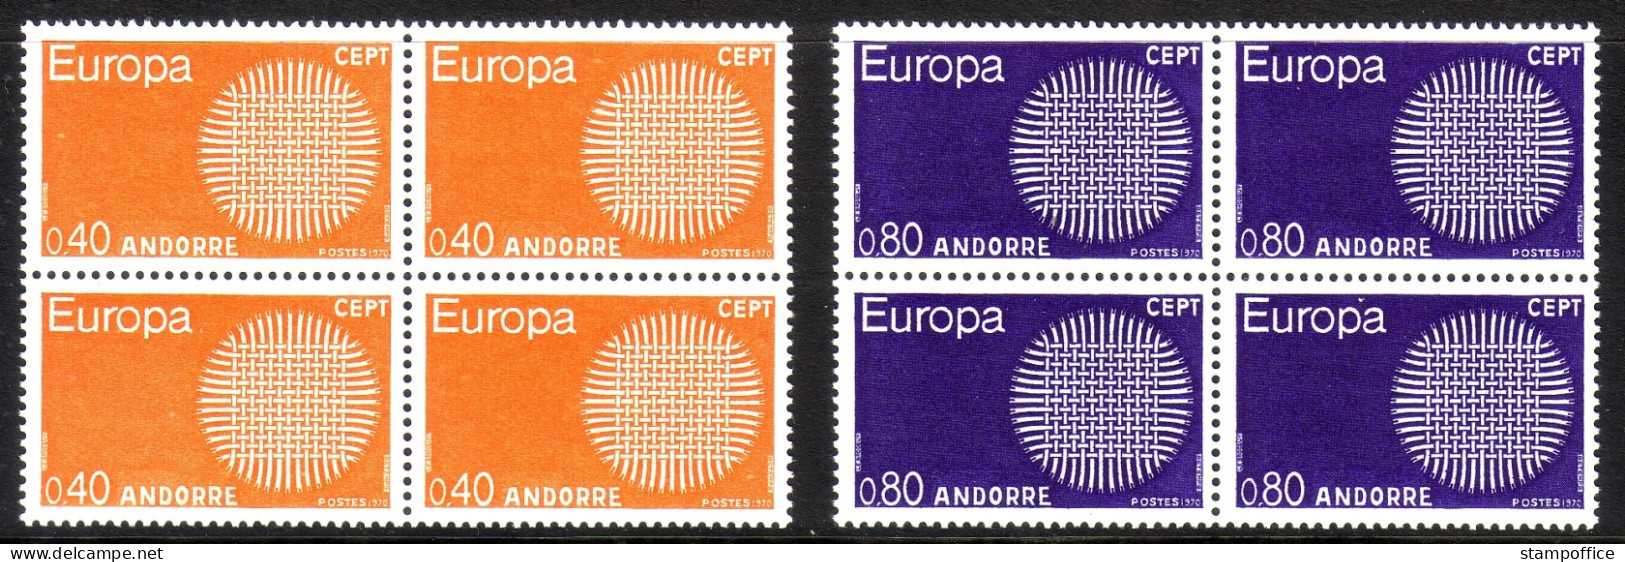 FRANZÖSISCH ANDORRA MI-NR. 222-223 POSTFRISCH(MINT) 4er-BLOCK EUROPA 1970 - 1970